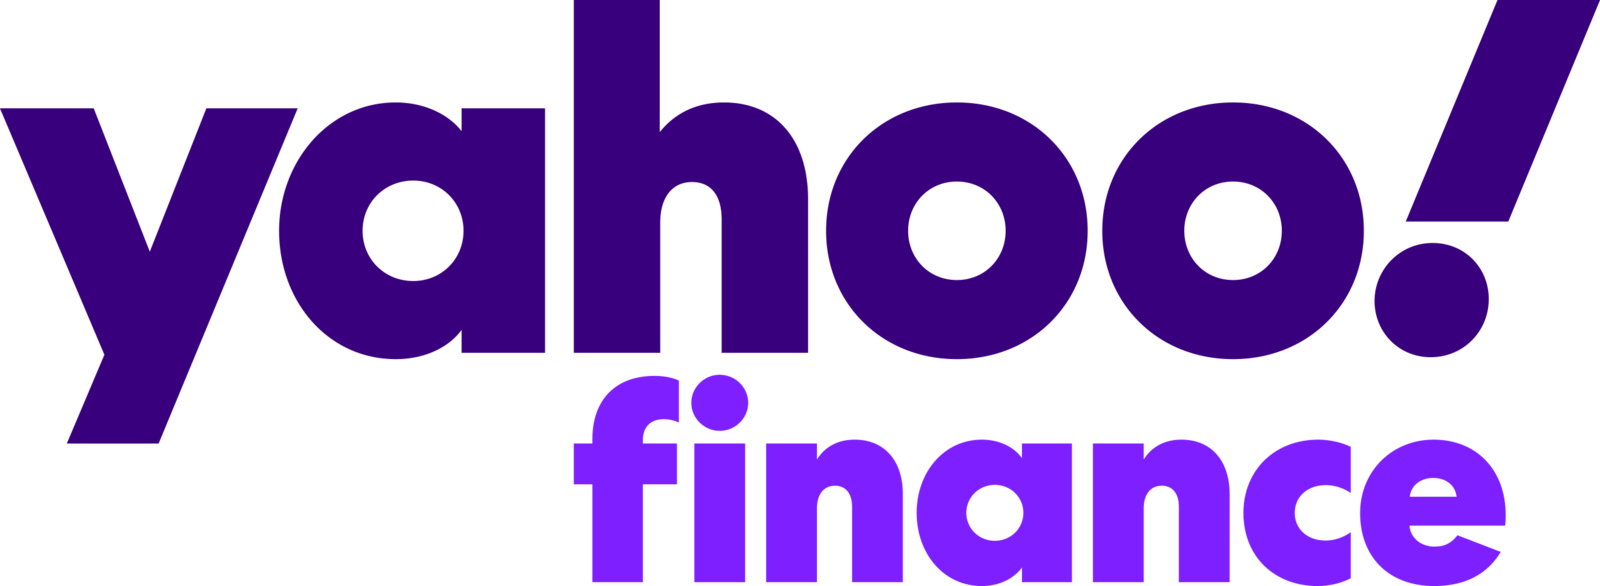 Yahoo Finance logo 1